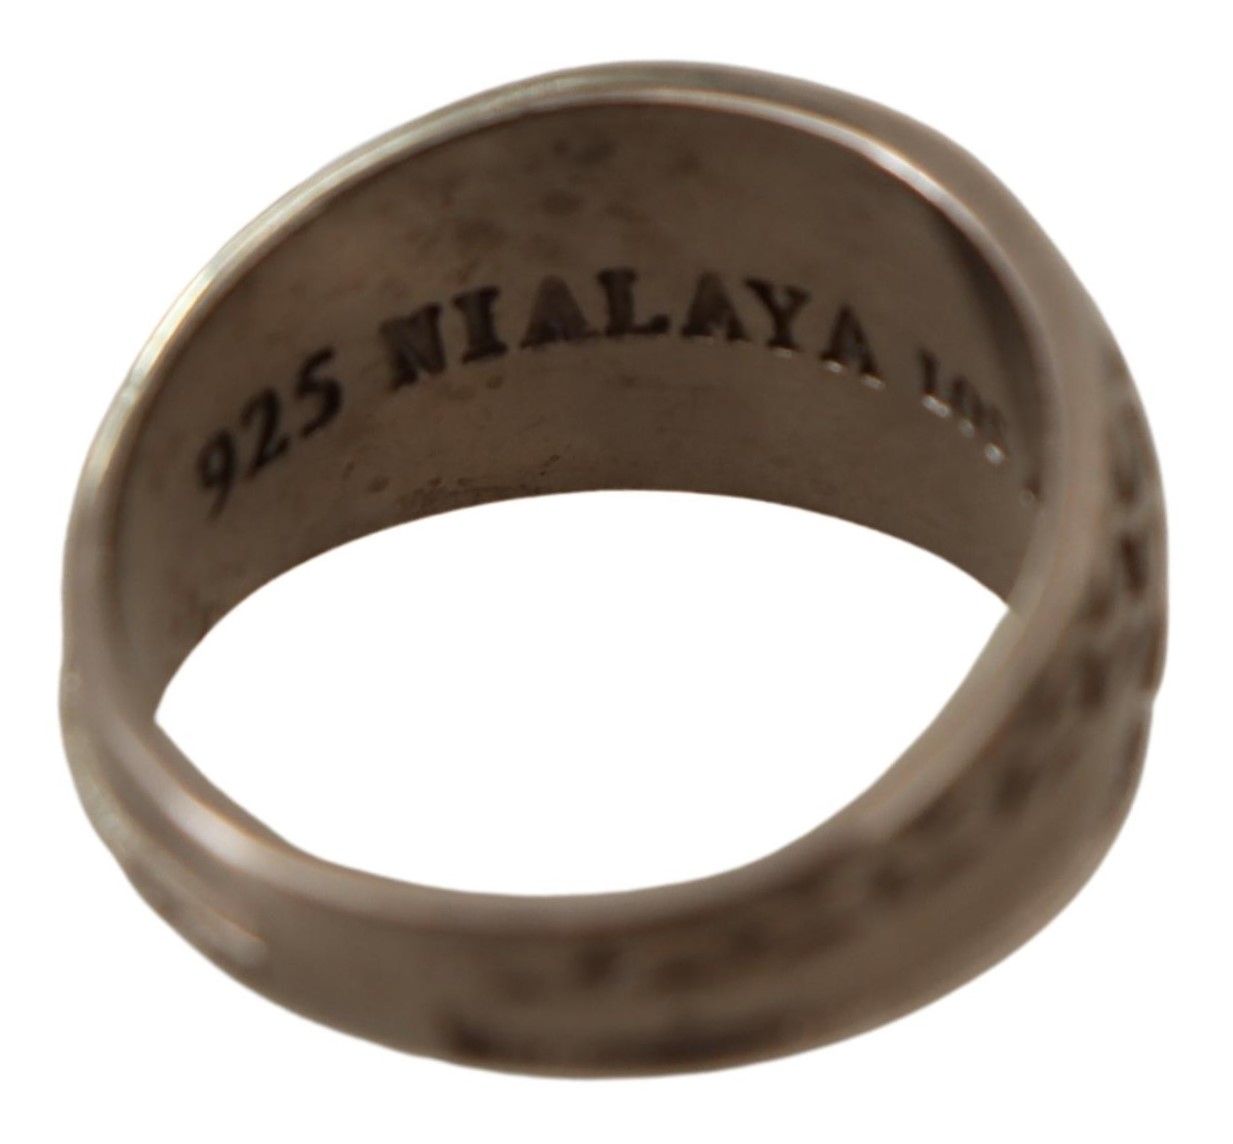 Nialaya Exquisiter Statement-Ring für Herren aus Silber